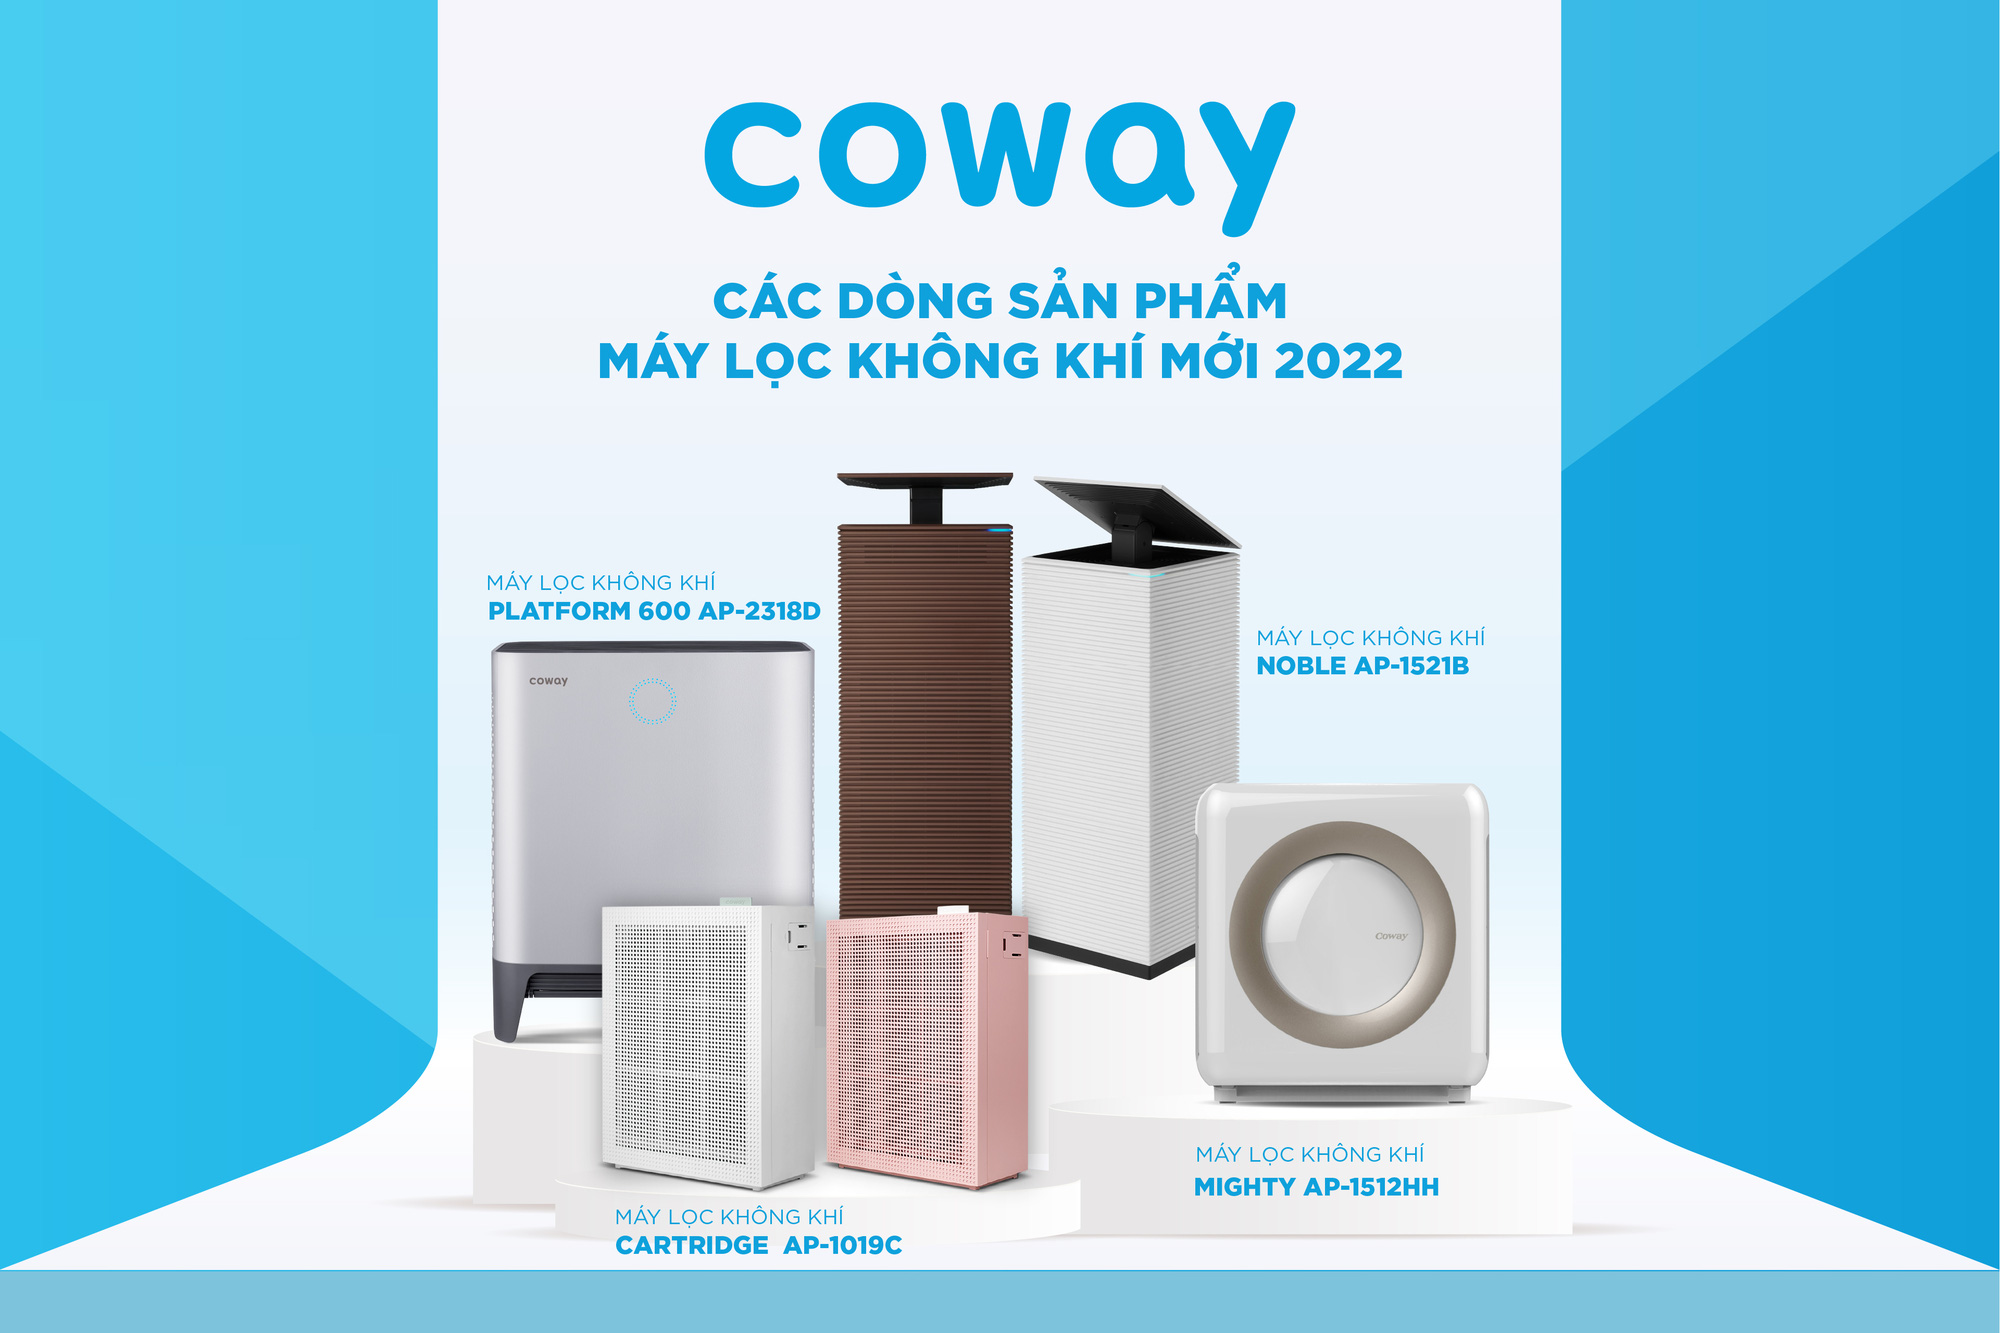 Coway dành giải thưởng “Thương hiệu máy lọc không khí xuất sắc” tại Tech Awards 2021 - Ảnh 2.